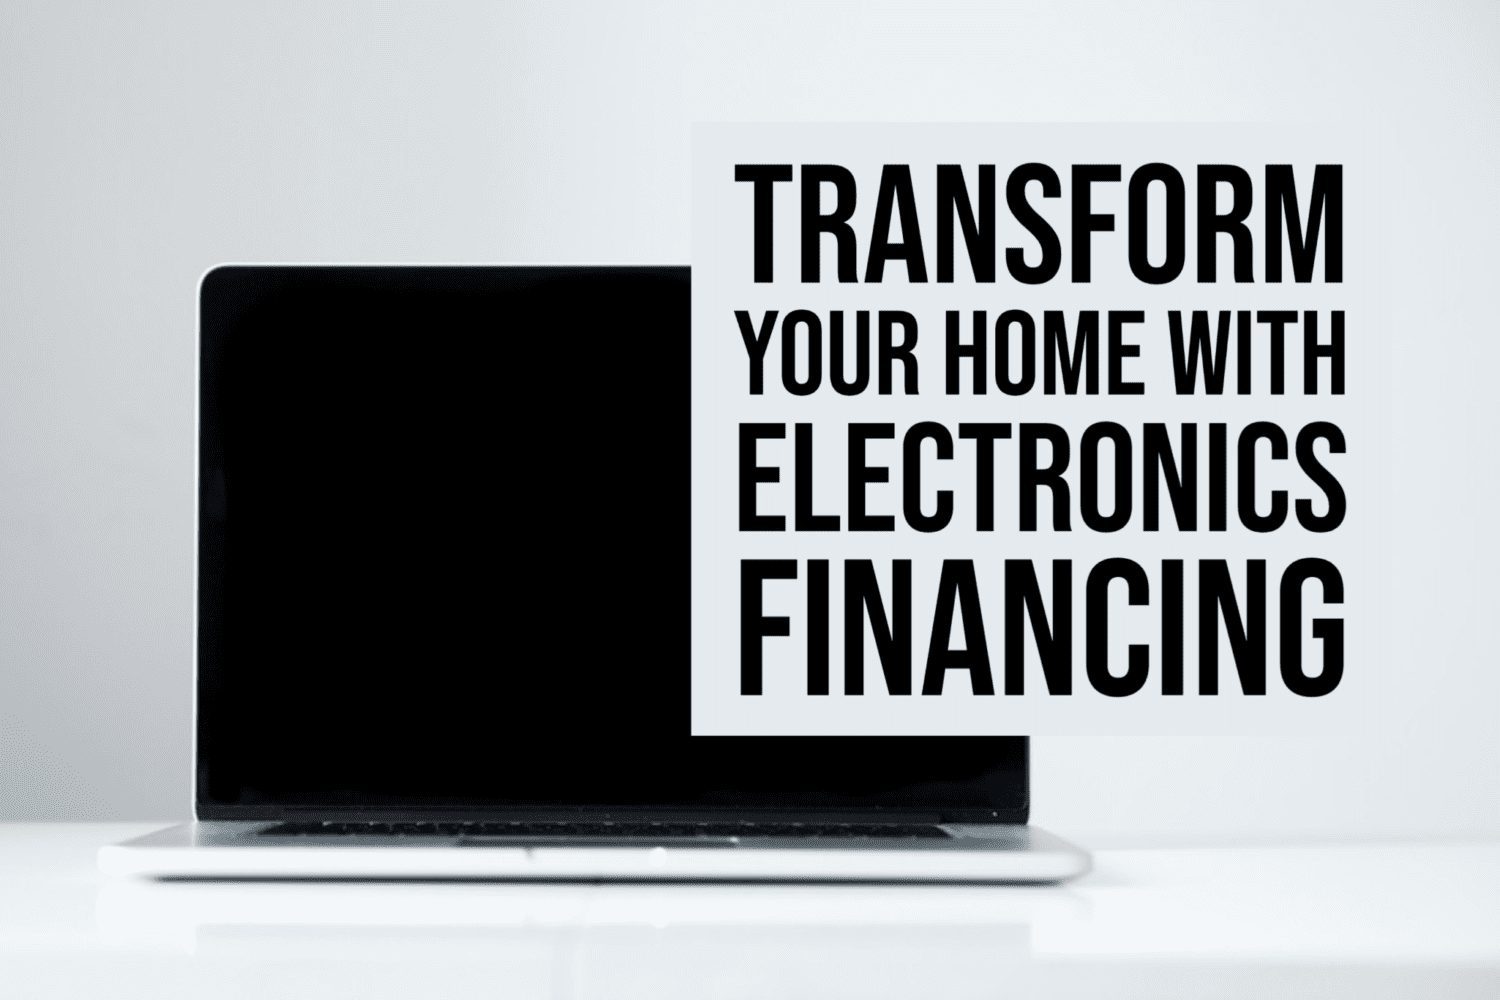 financing electronics